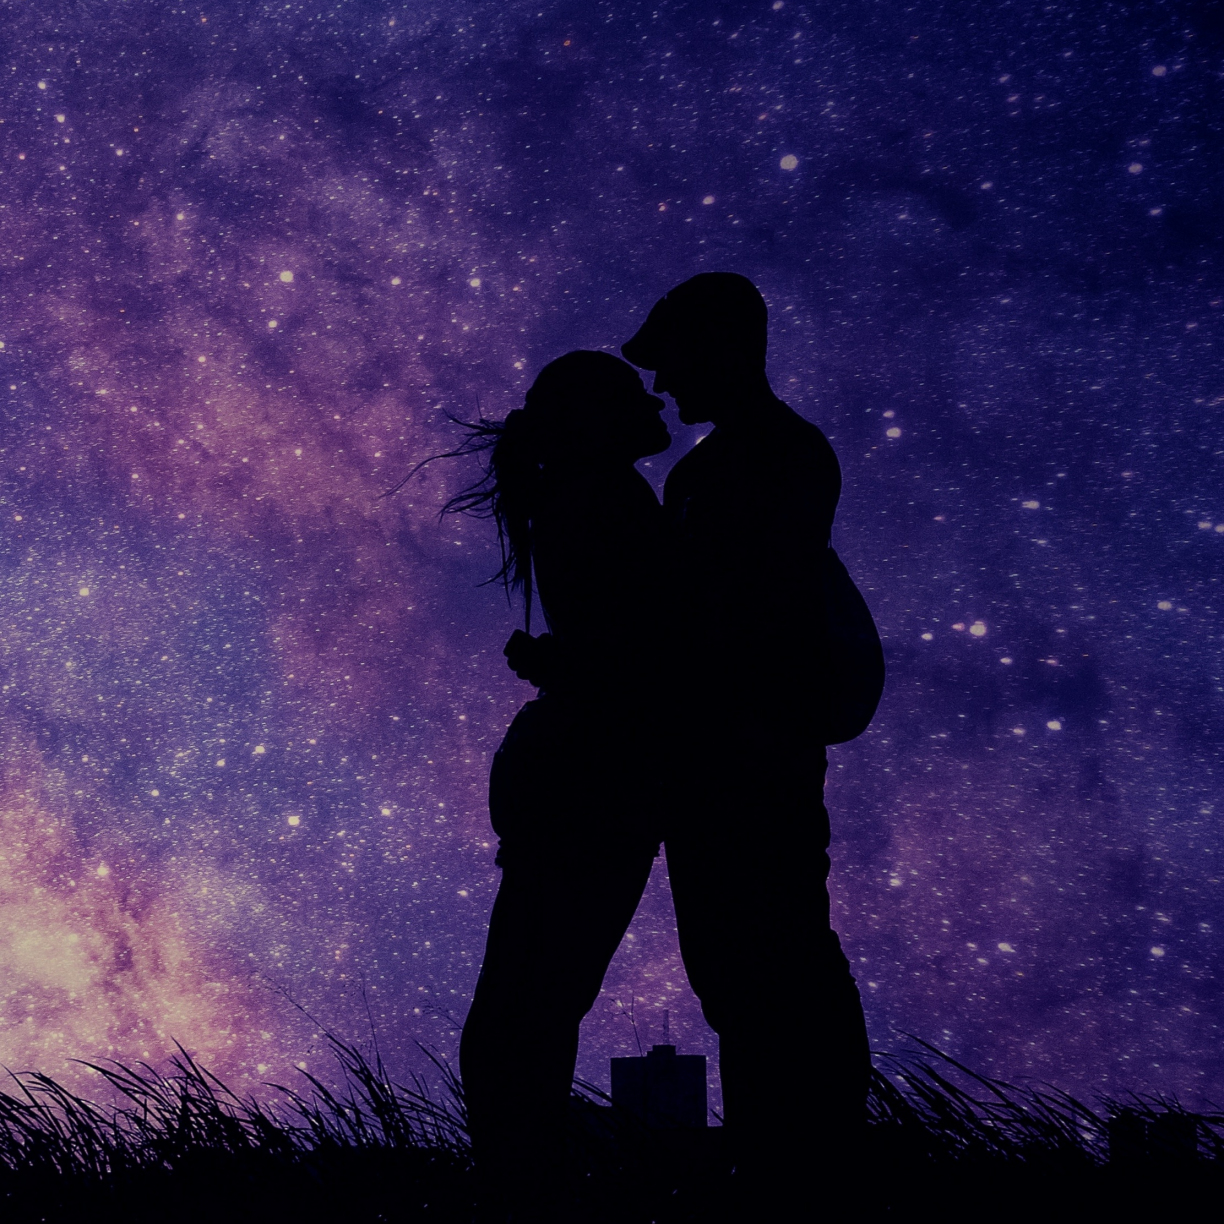 Couple, romantic night, love, silhouette, art wallpaper, HD image, picture, background, 21fa11